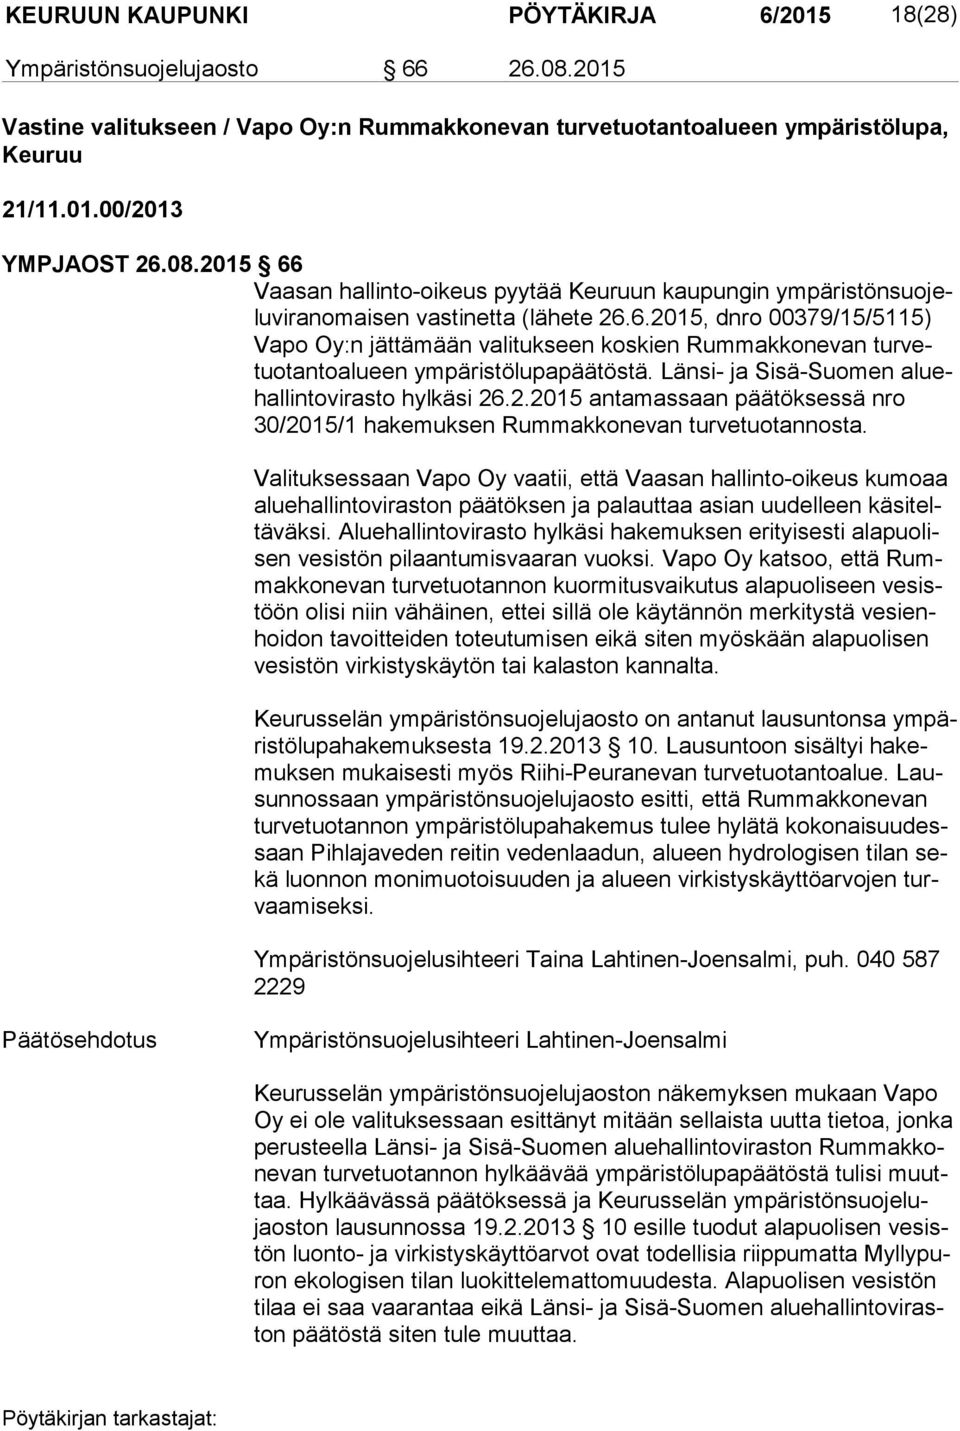 Länsi- ja Sisä-Suomen aluehal lin to vi ras to hylkäsi 26.2.2015 antamassaan päätöksessä nro 30/2015/1 hakemuksen Rummakkonevan turvetuotannosta.